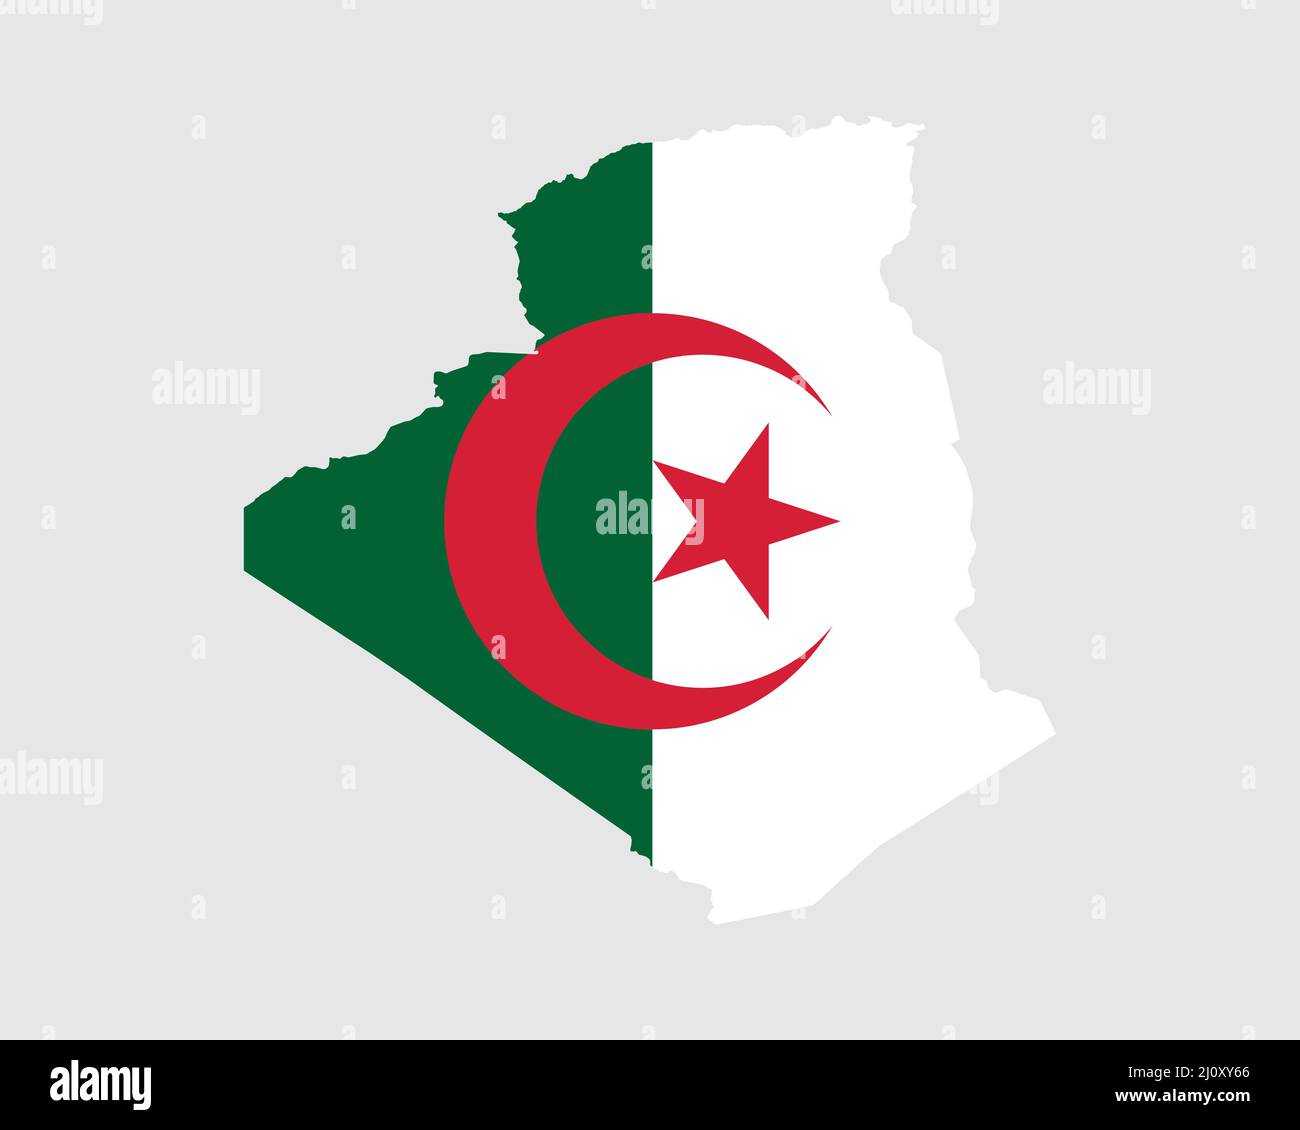 Bandera del mapa argelino. Mapa de Argelia con la bandera nacional de Argelia aislada sobre fondo blanco. Ilustración vectorial. Ilustración del Vector